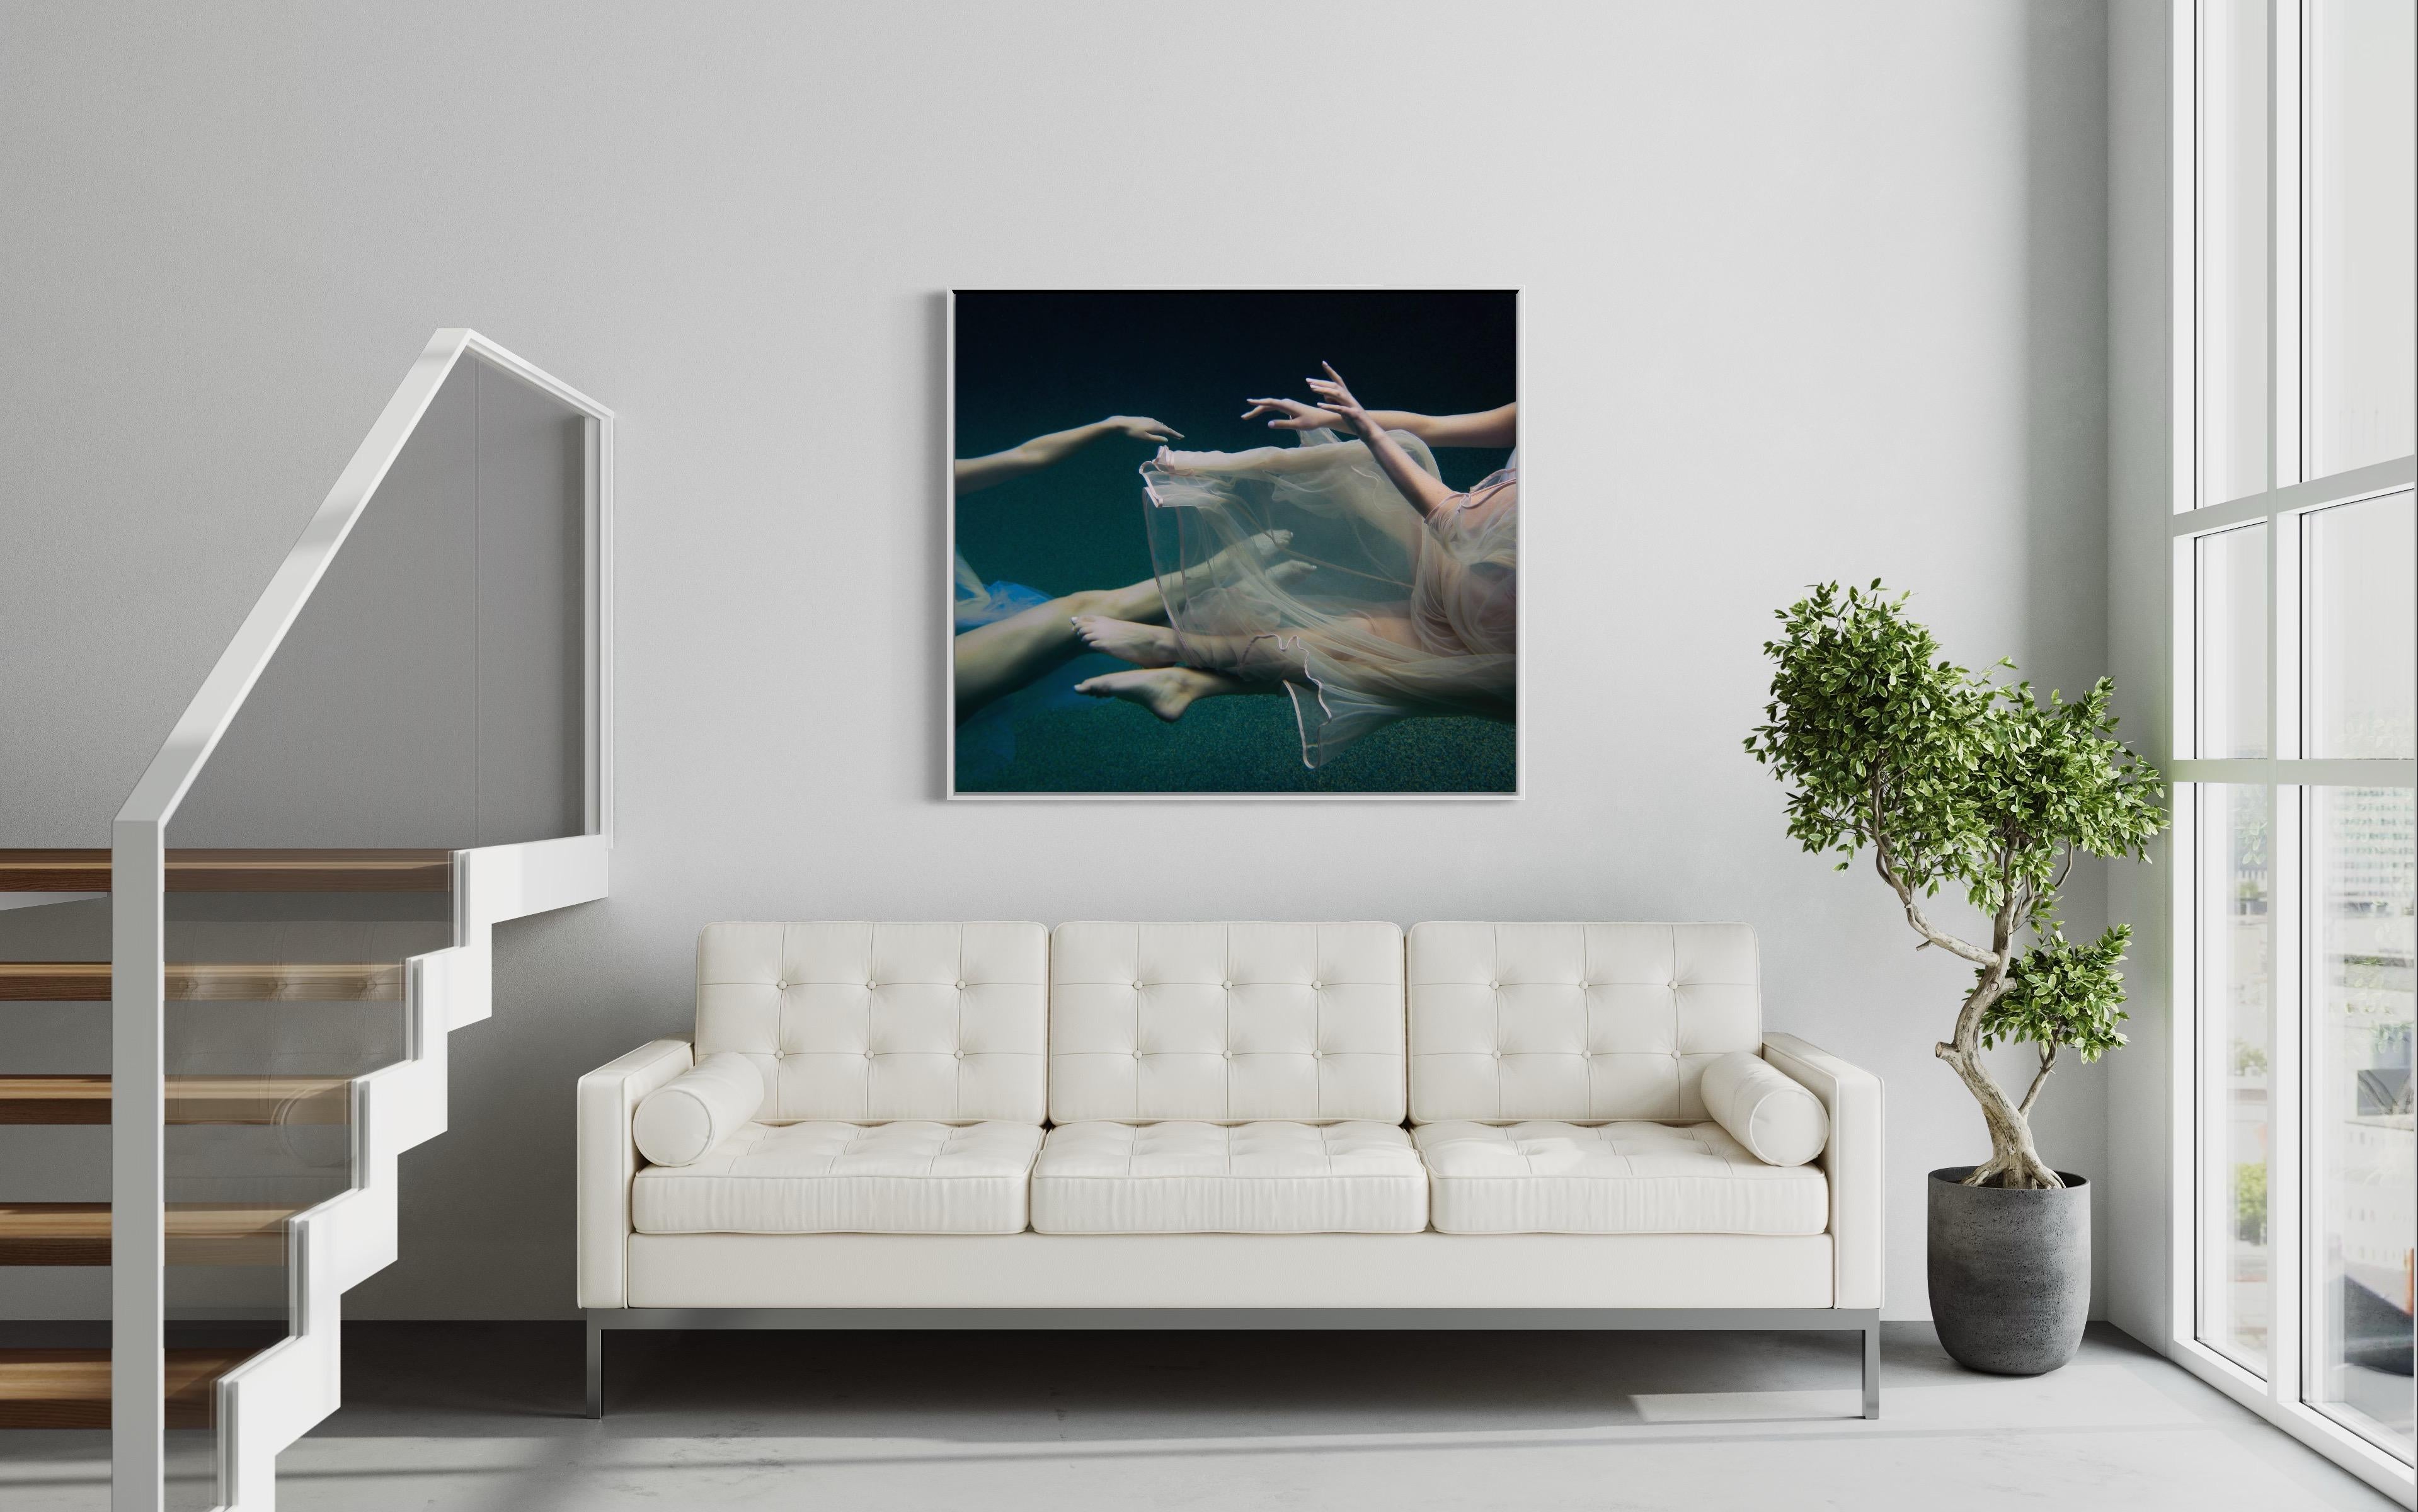 Cette photographie d'art en édition limitée d'Alyssa Fortin capture les bras et les jambes de formes féminines de chaque côté de la composition, enveloppées d'un tissu de tulle doux alors qu'elles sont immergées dans l'eau. Les sujets flottent sous